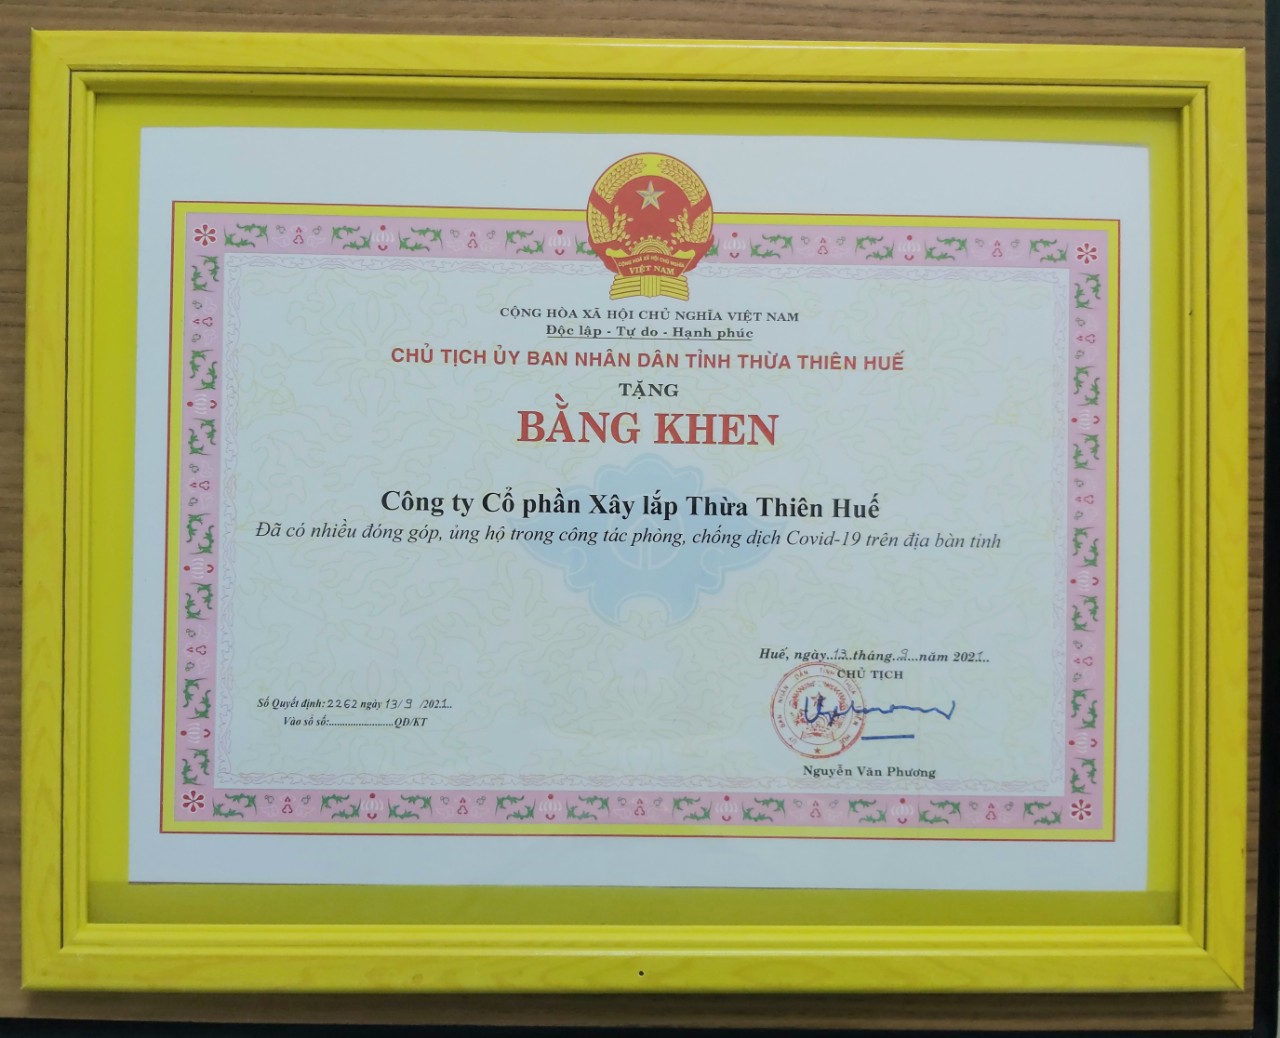  Công ty CP Xây lắp Thừa Thiên Huế nhận Bằng khen của Chủ tịch UBND Tỉnh trao tặng vì đã có nhiều đóng góp, ủng hộ trong công tác phòng chống dịch Covid- 19 trên địa bàn tỉnh.